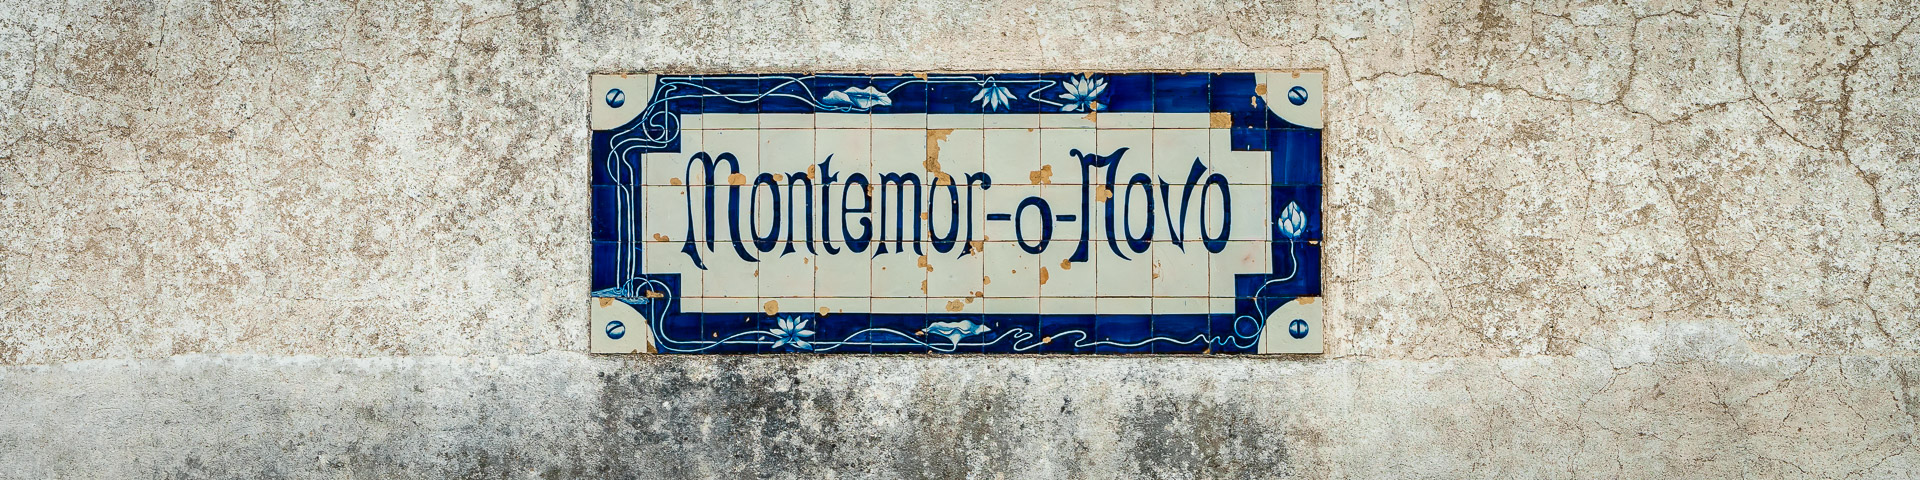 Geheimtipp: Montemor-o-Novo im Alentejo